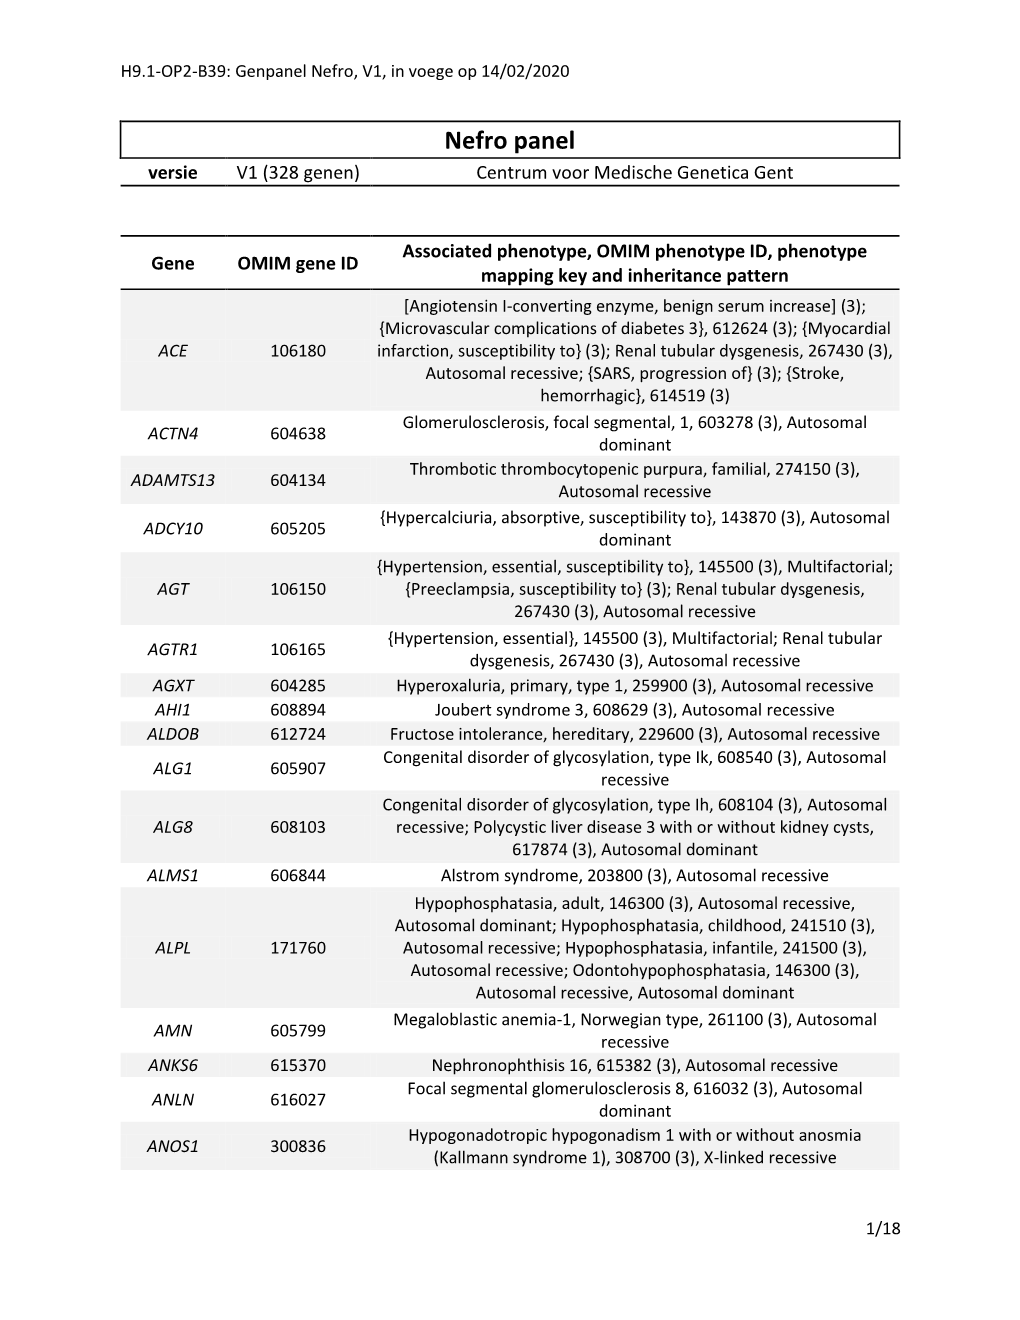 Nefro Panel Versie V1 (328 Genen) Centrum Voor Medische Genetica Gent